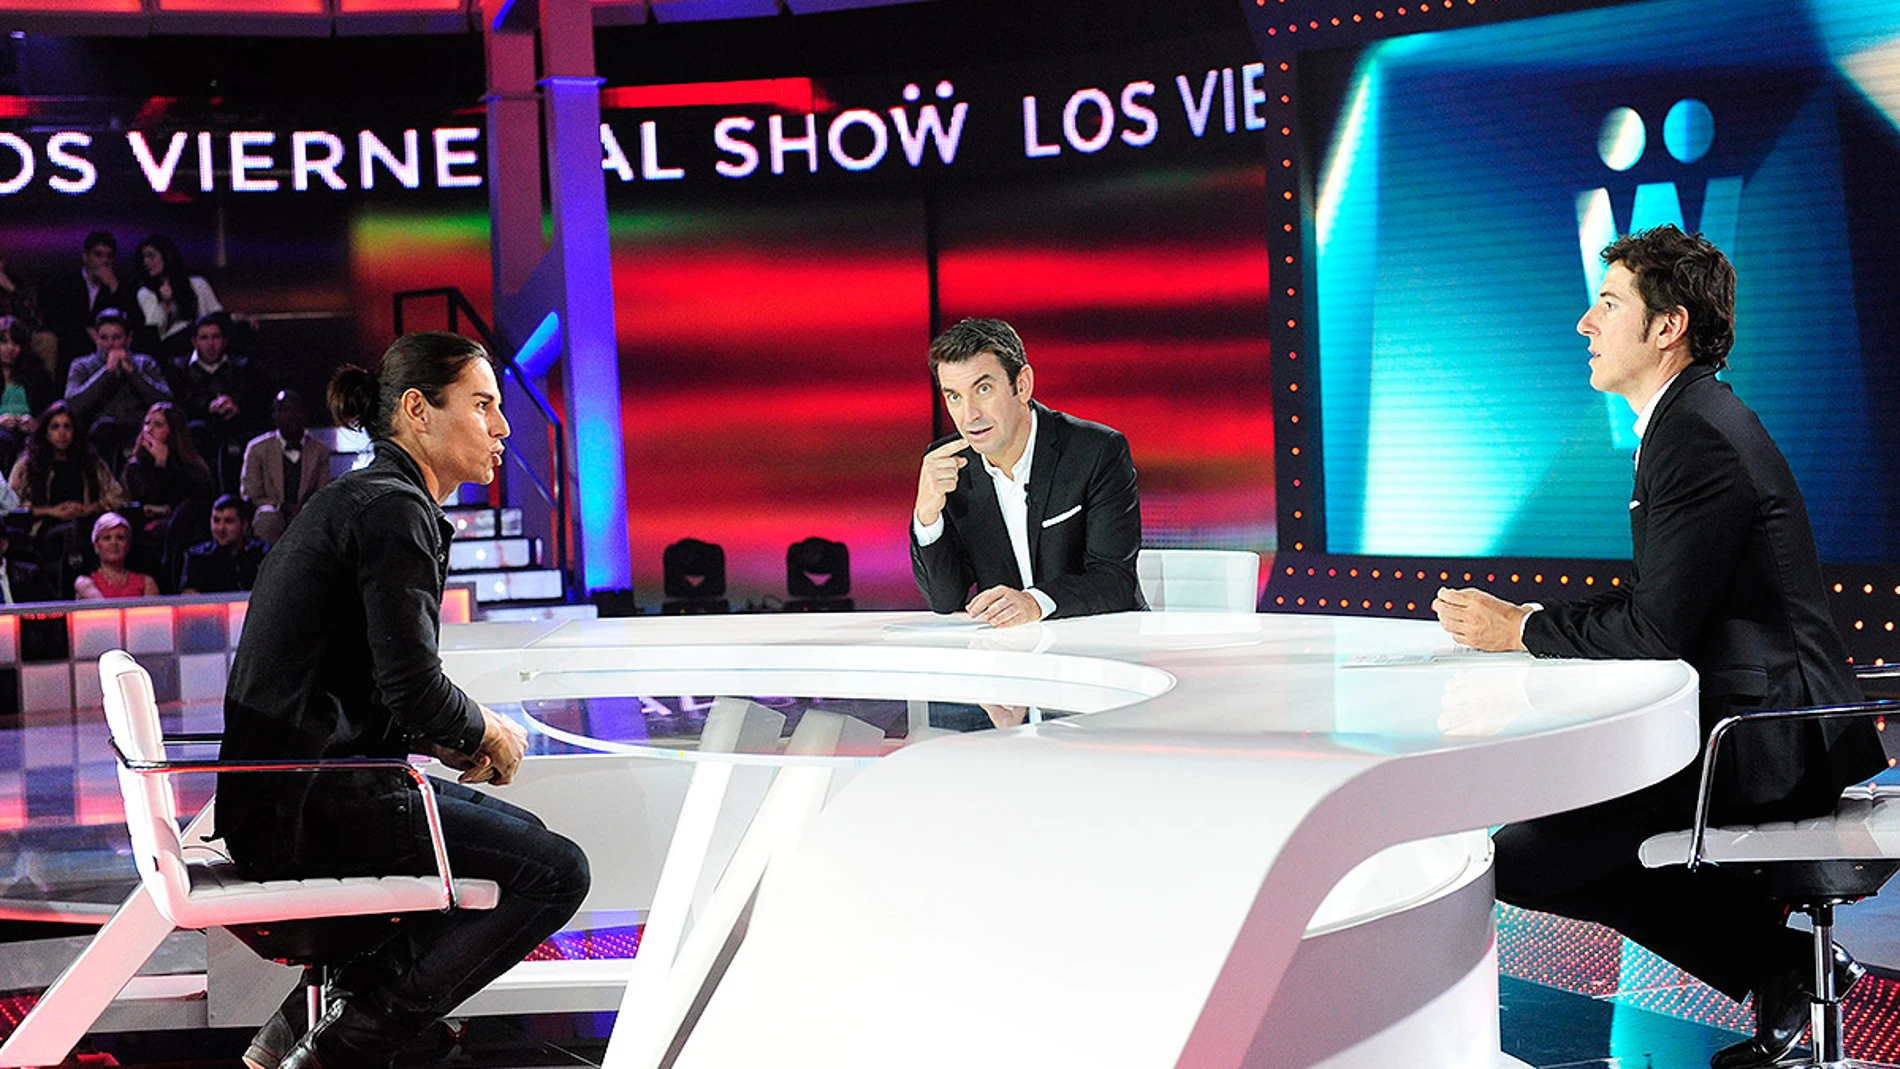 Entrevista a Julio José Iglesias en Los viernes al show